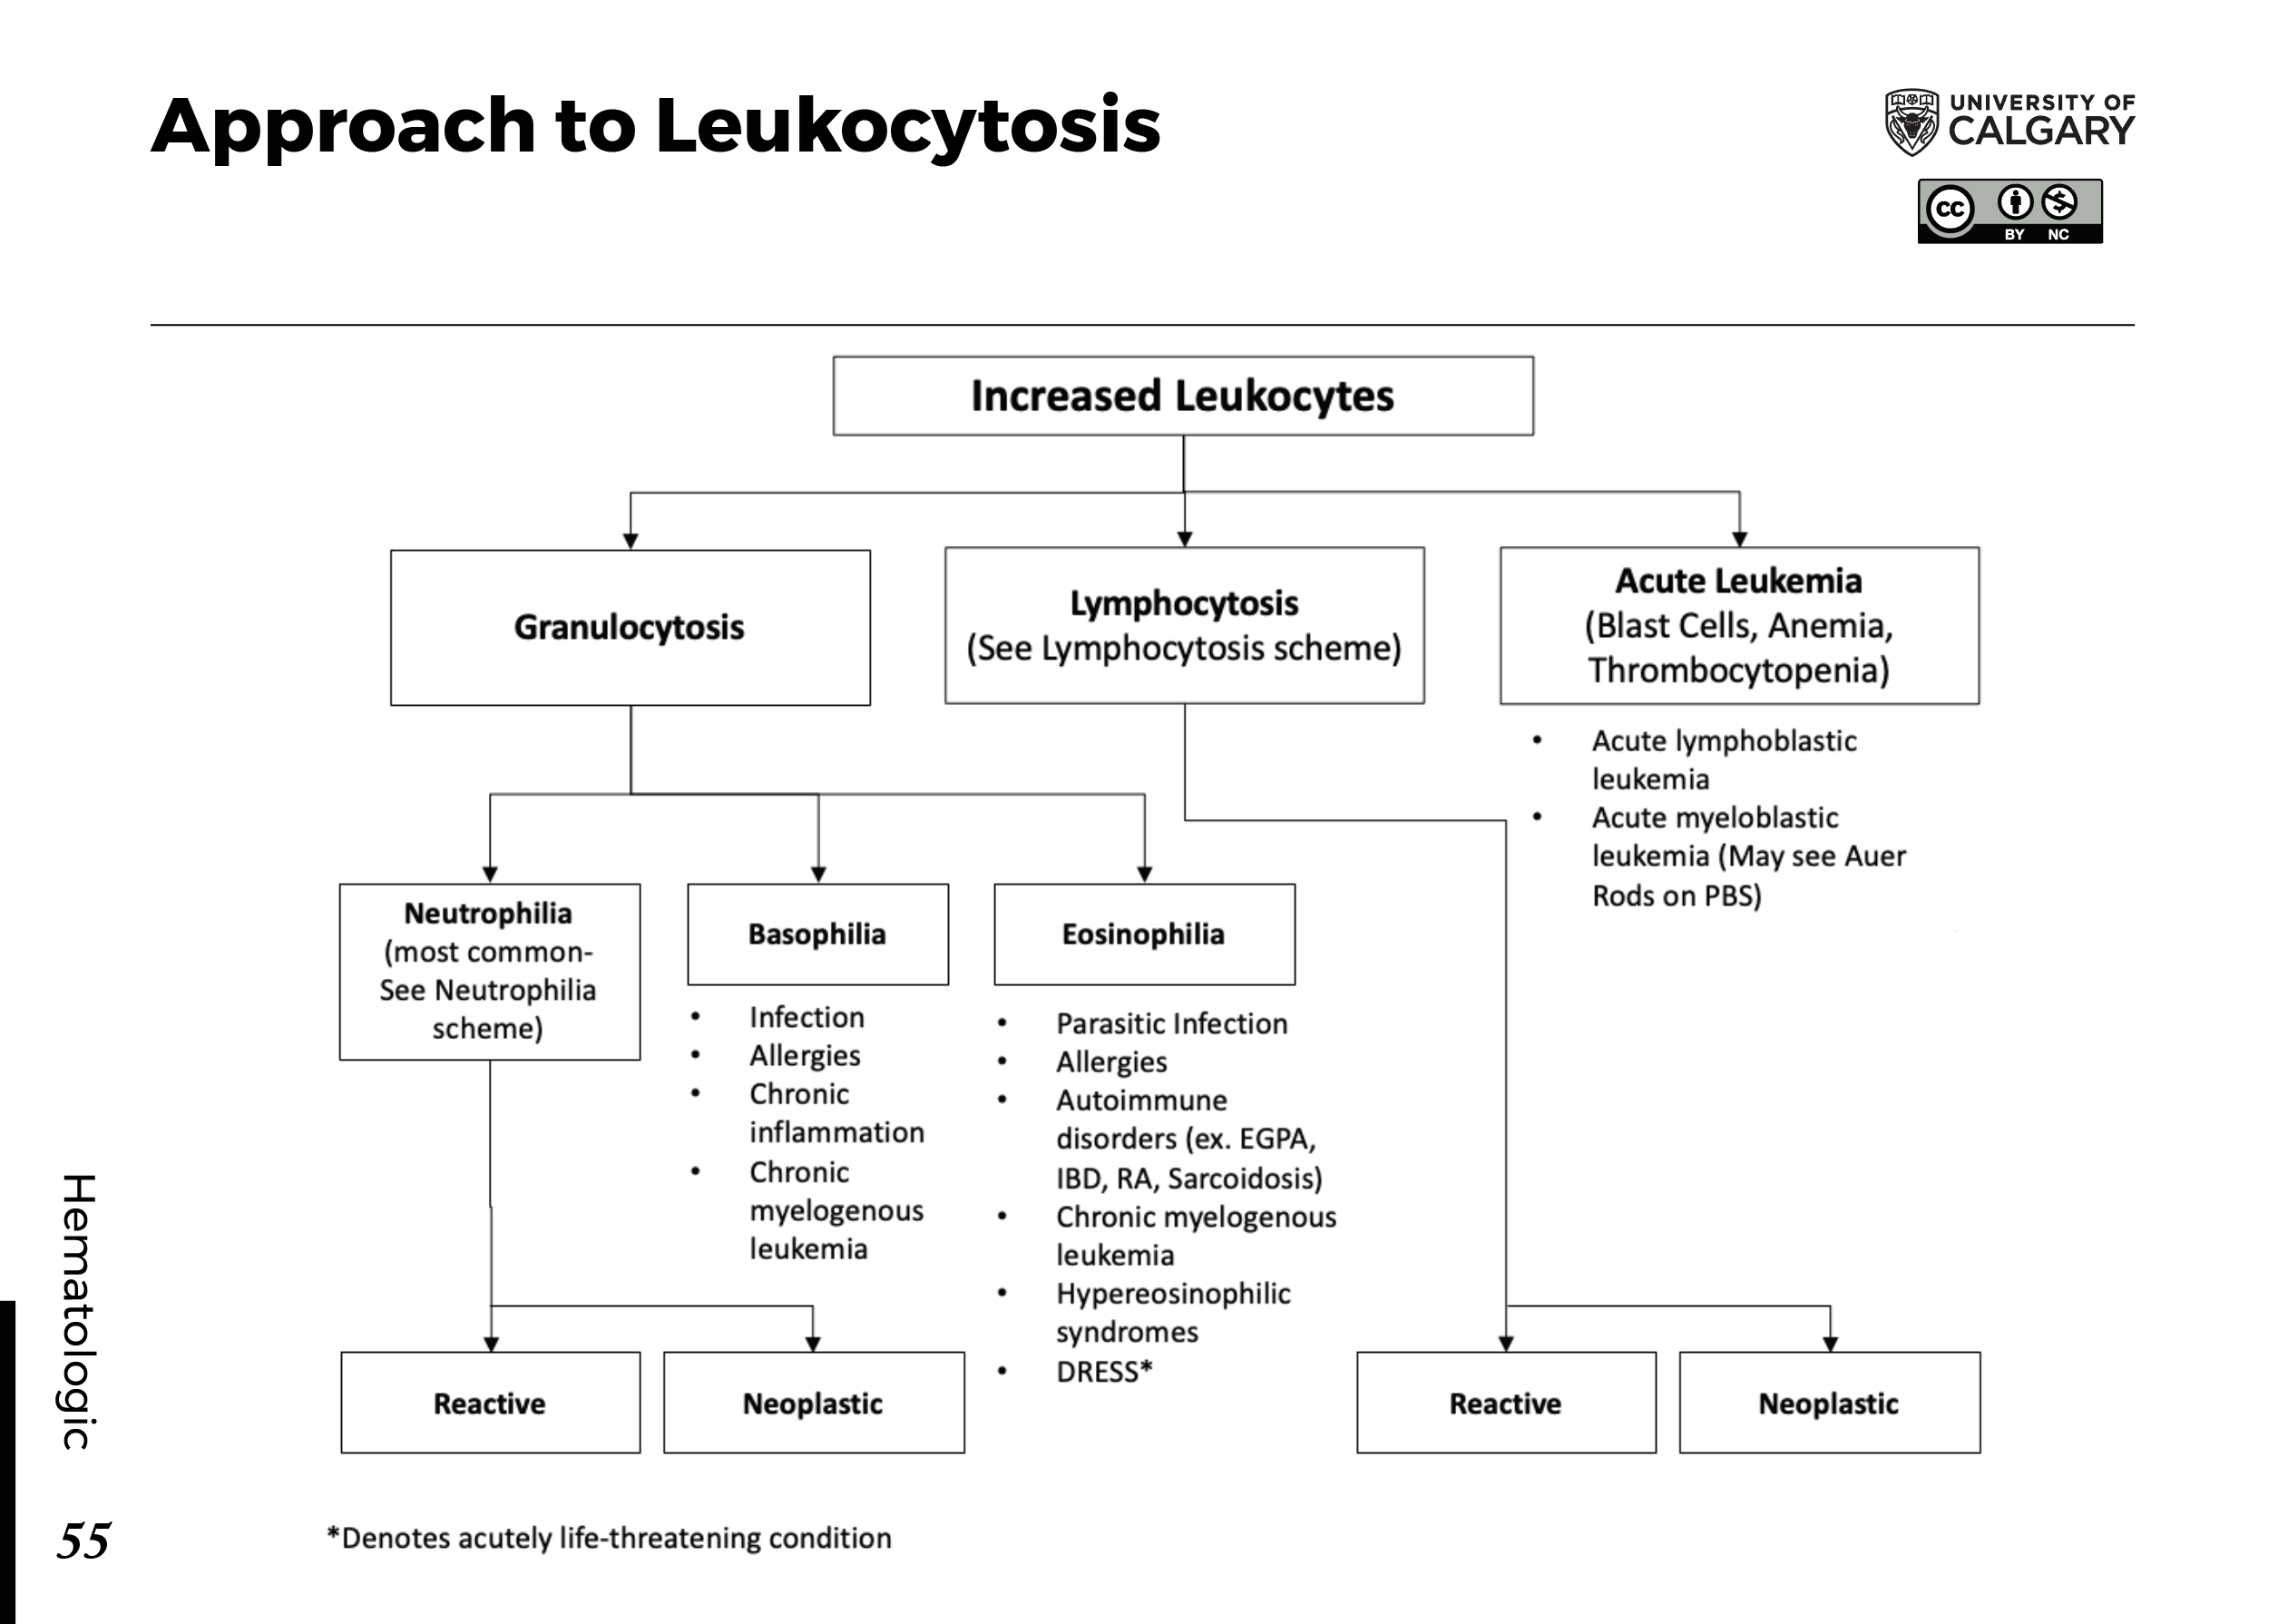 Approach to Leukocytosis Scheme